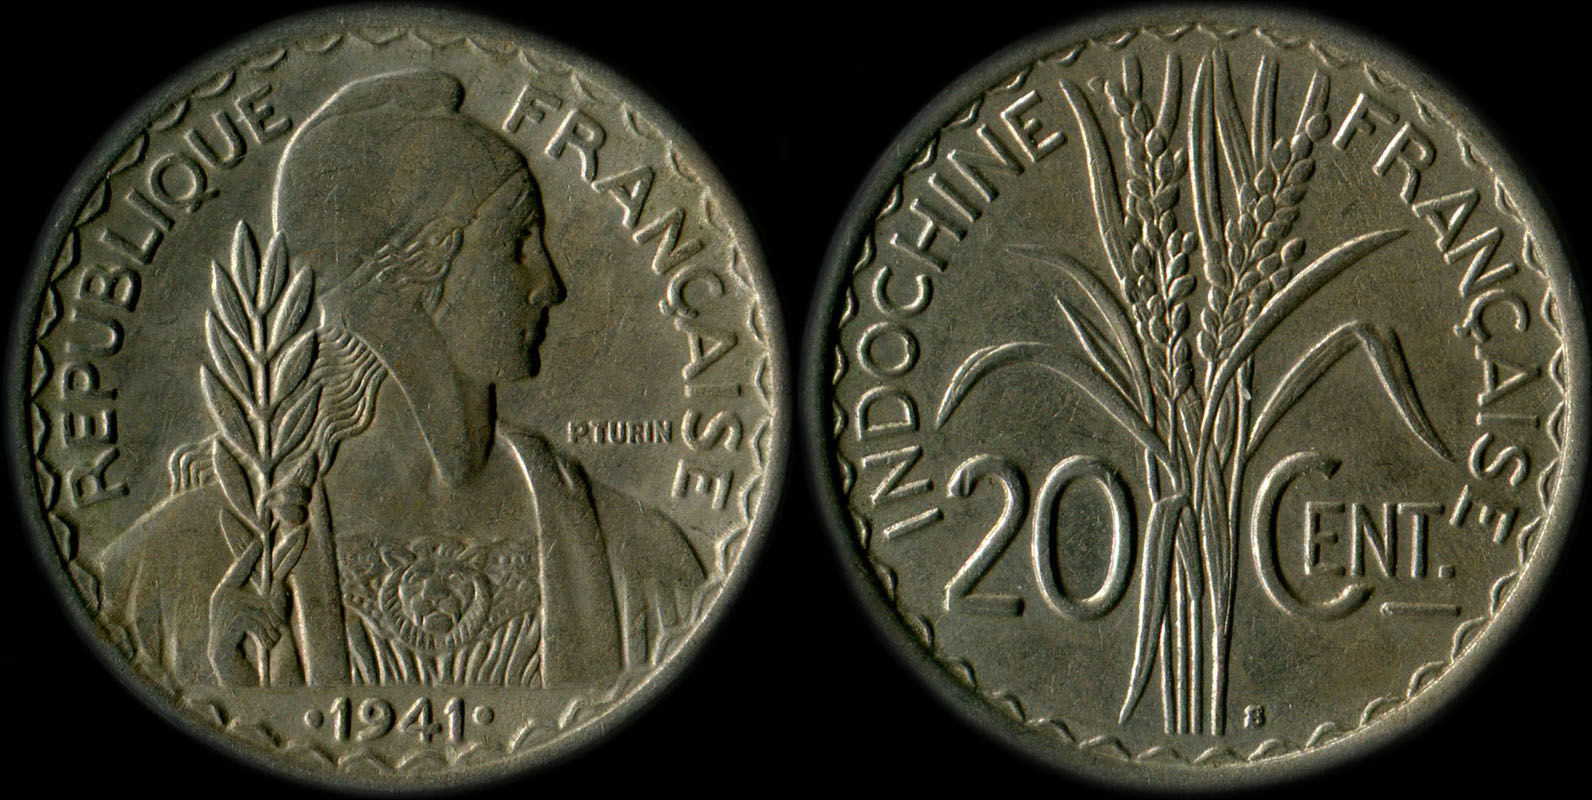 Pice de 20 centimes Indochine 1941 non magntique